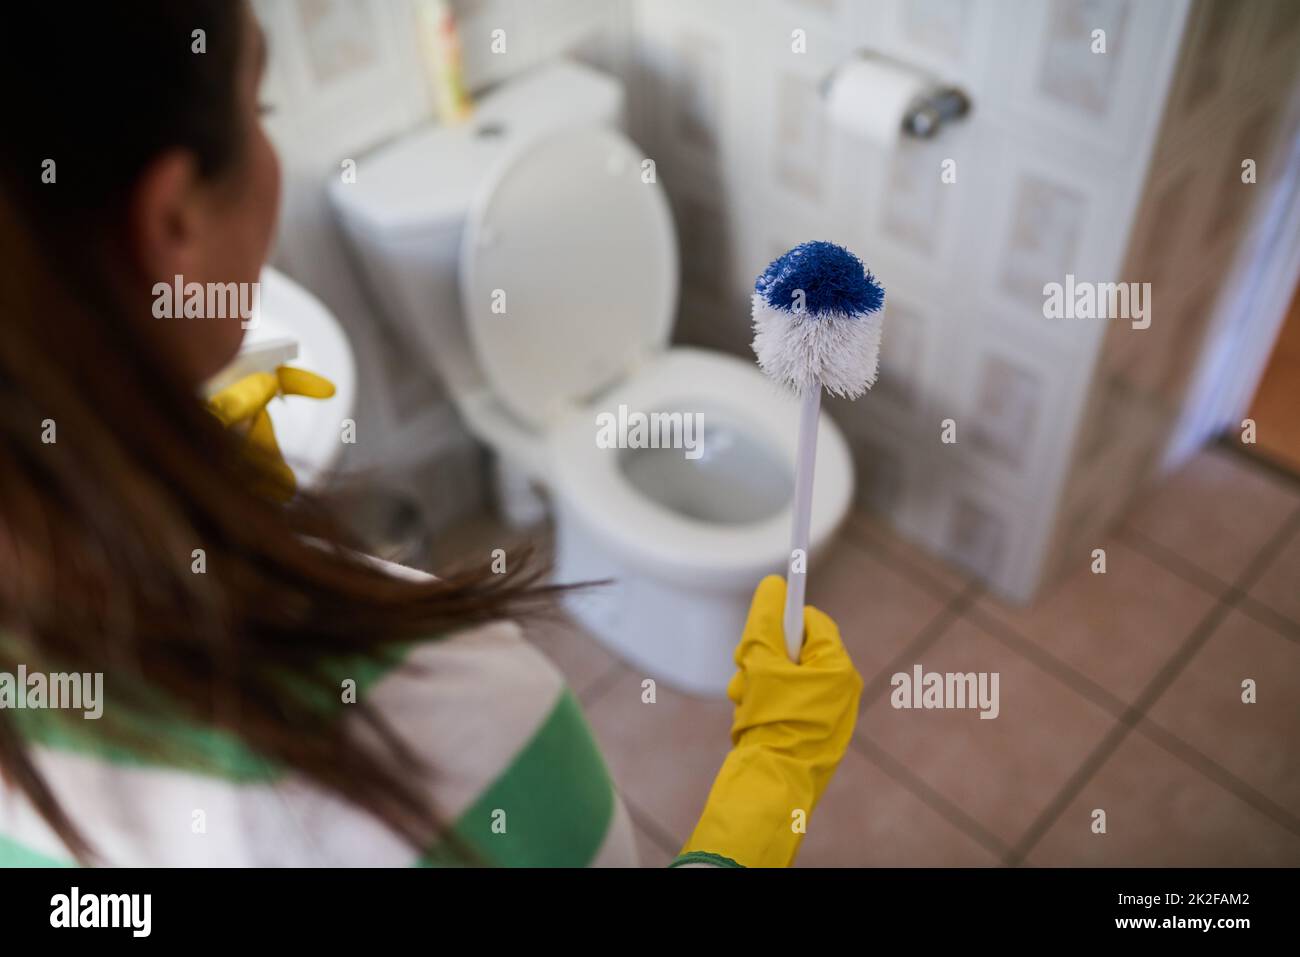 Nettoyage Des Toilettes, Hygiène, Propreté Dans La Salle De Bain. Femme  Lavant Le Polissage De La Cuvette Des Toilettes Avec Un Chiffon En  Microfibre